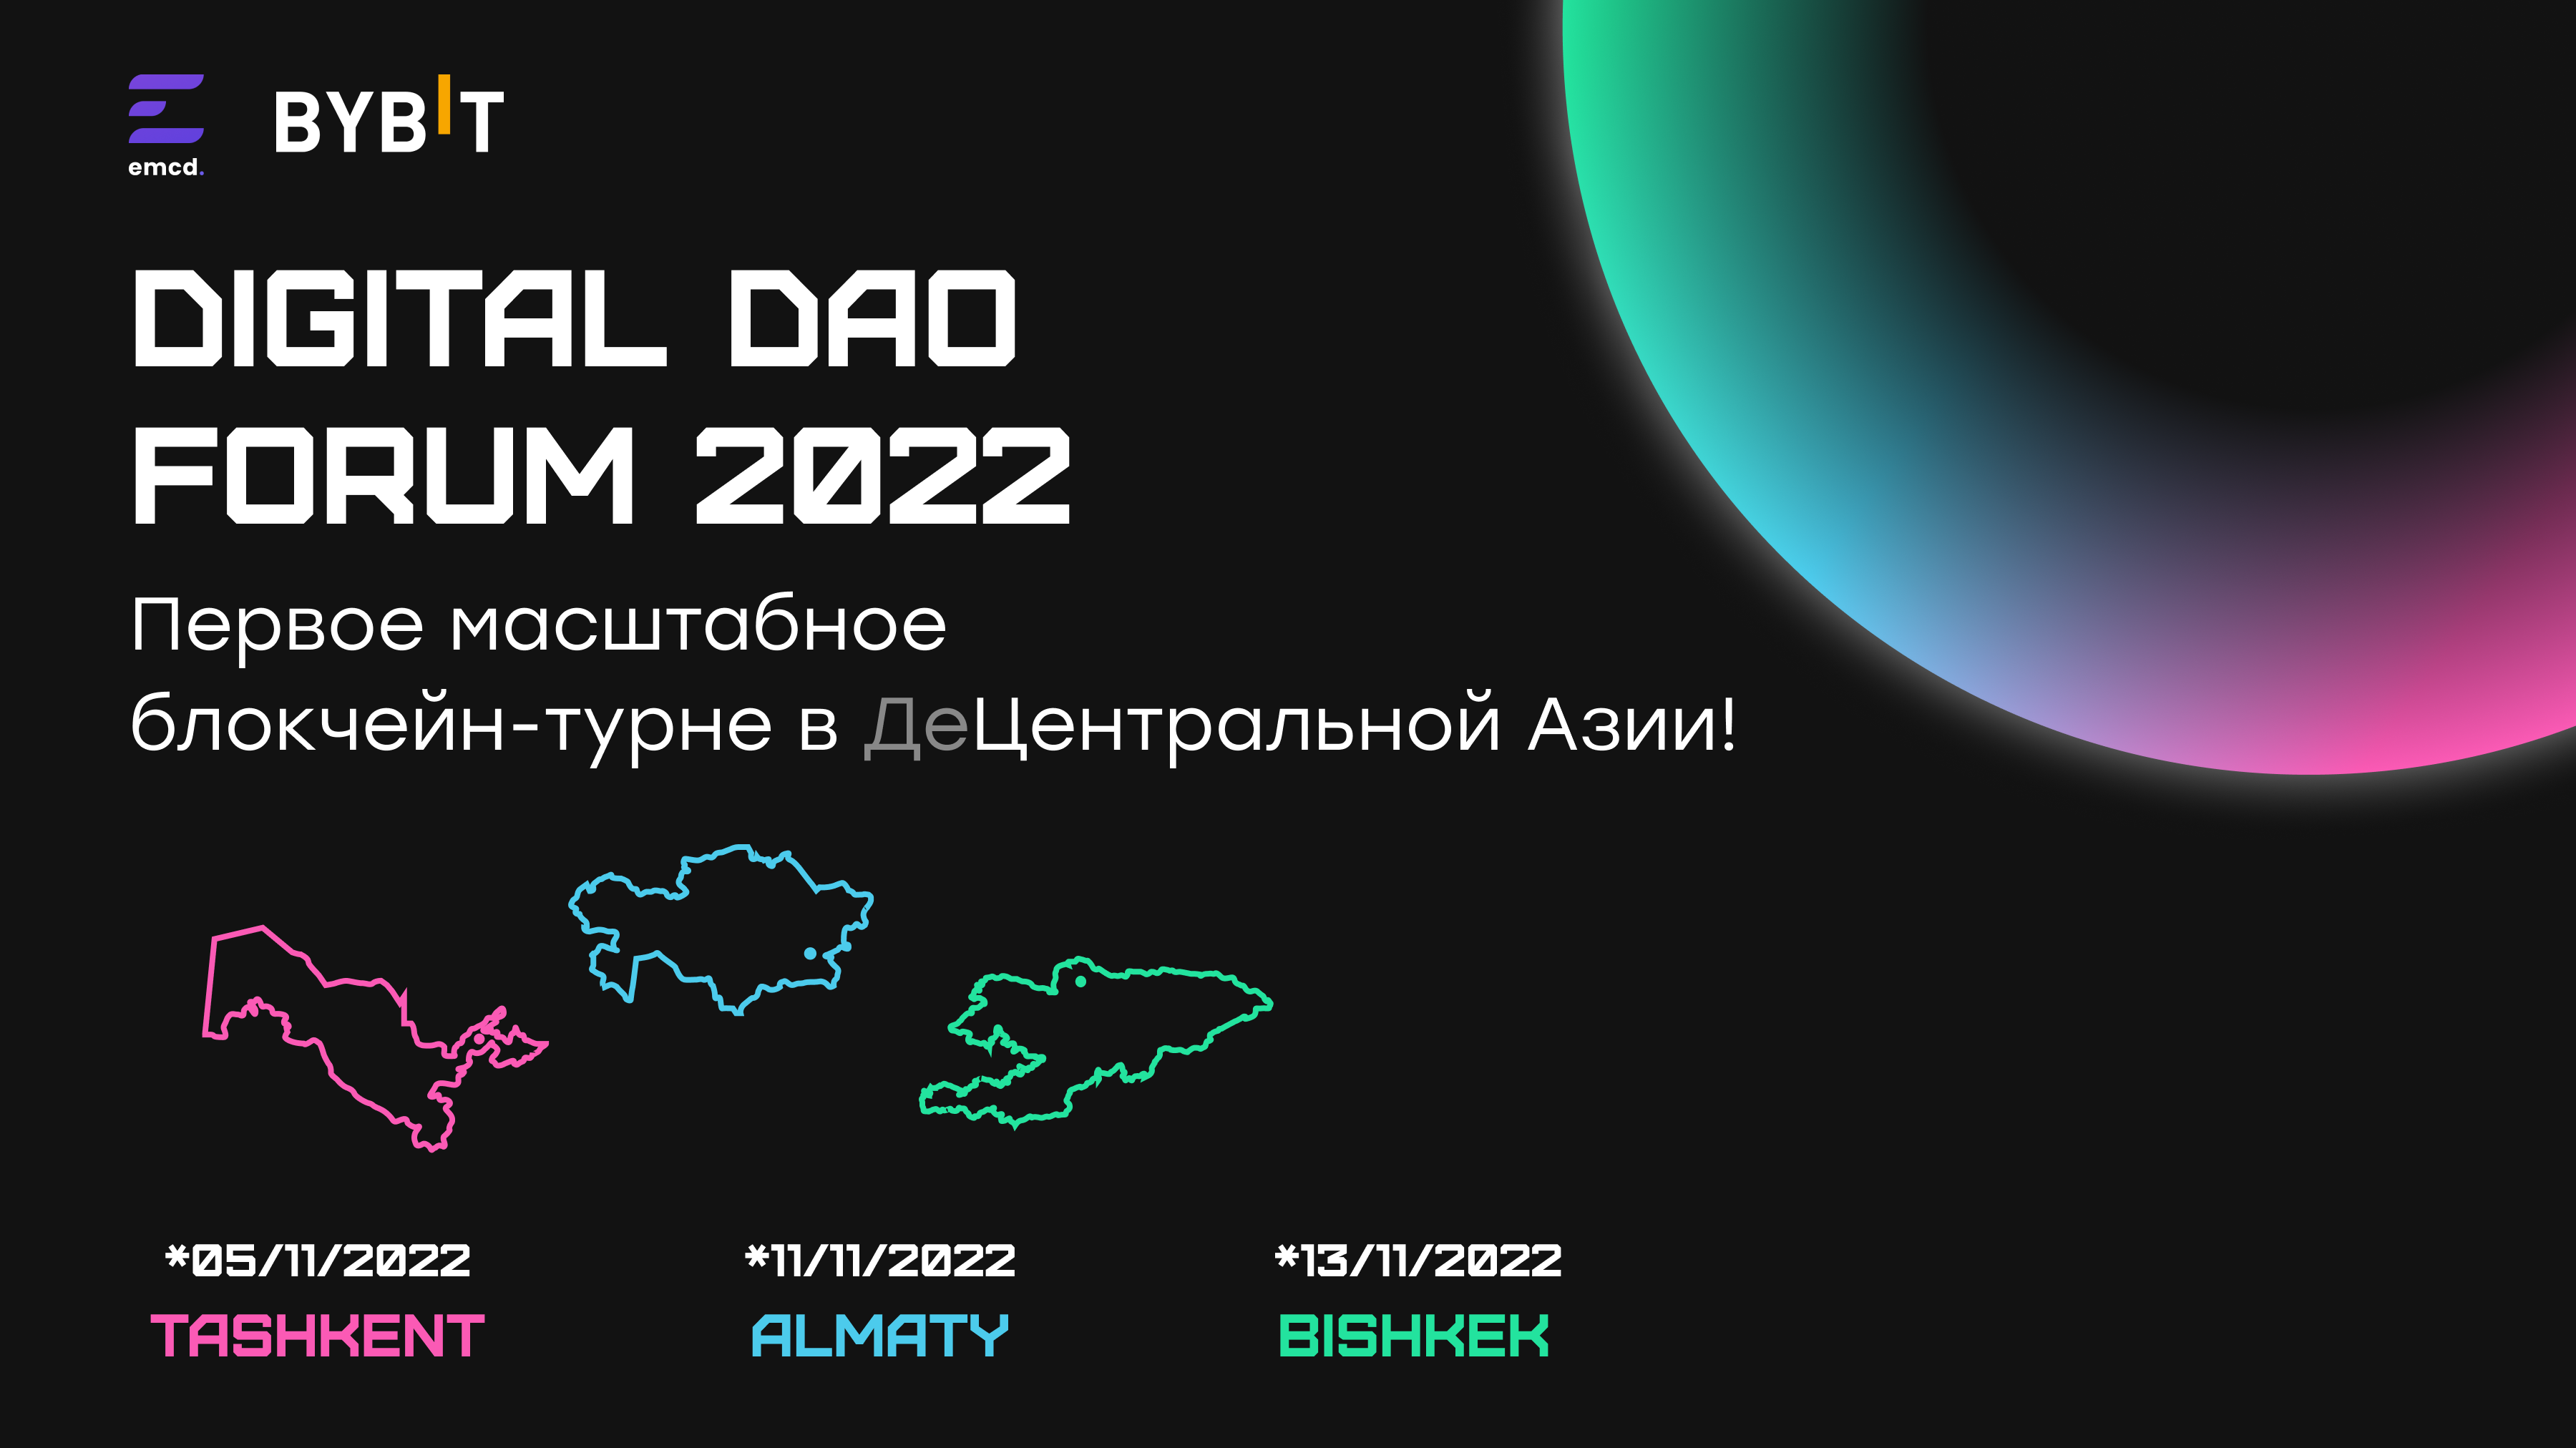 5-13 ноября состоится блокчейн-турне DIGITAL DAO FORUM 2022